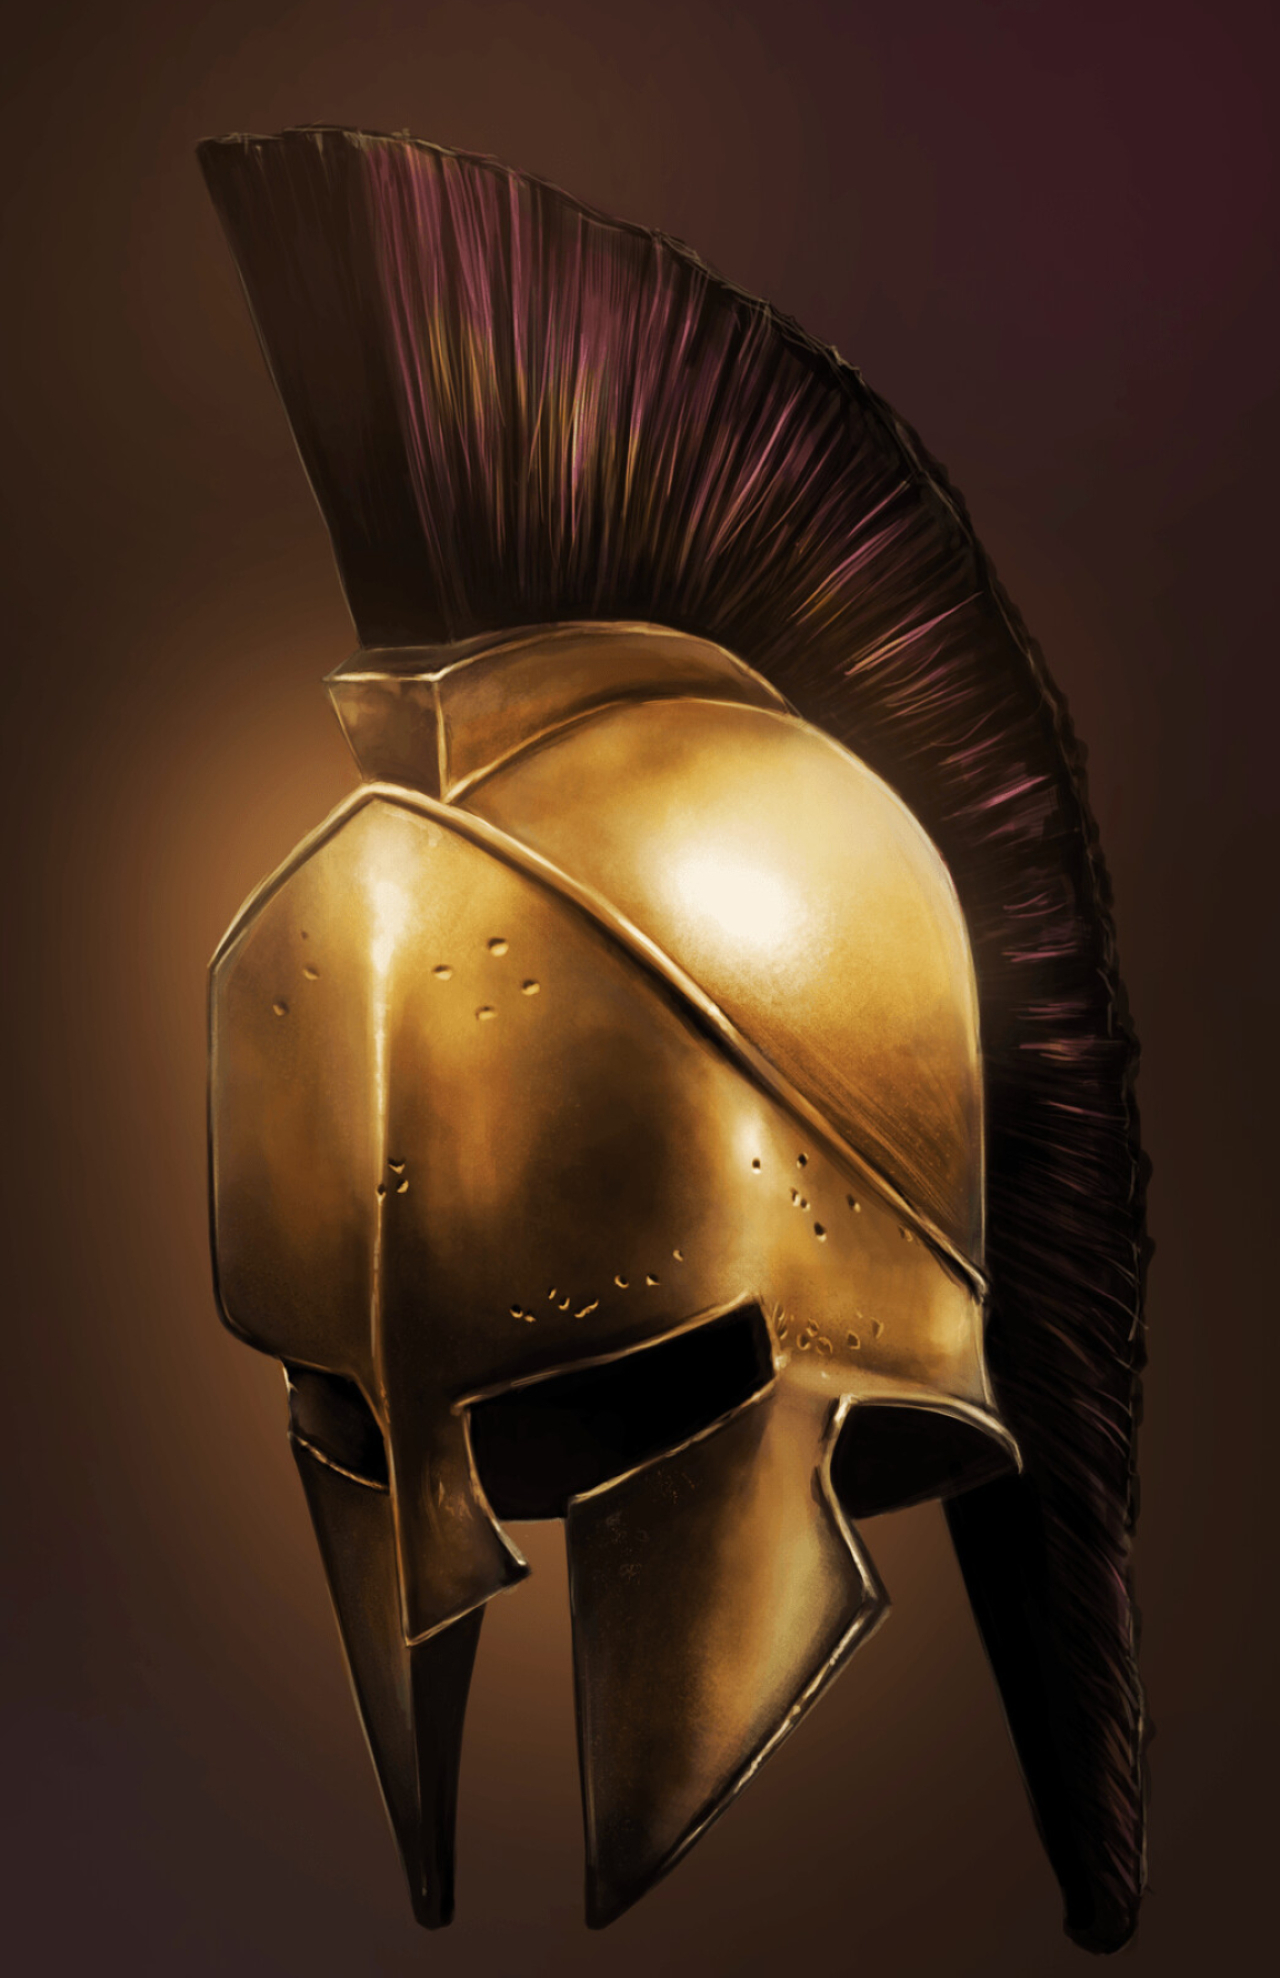 Sparta: Fan art of a golden Spartan helmet, The Imperial helmet-type modernized by ancient Greeks, Metal helmet, Metal armor. 1280x1980 HD Wallpaper.